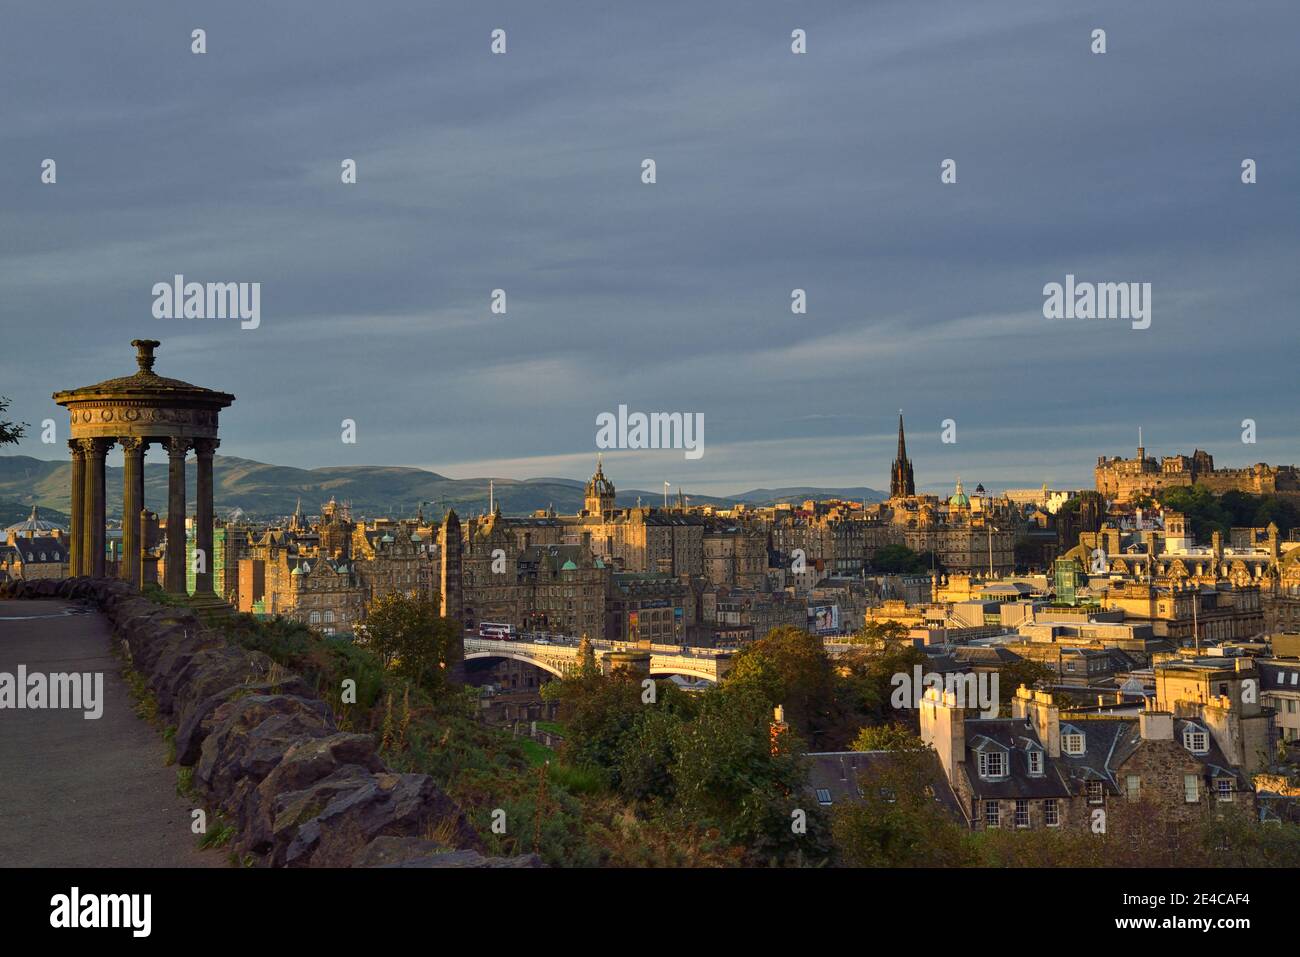 Calton Hill, Dugald Stewart Monument, Castle, e il paesaggio urbano con Princess Street, Edimburgo, Scozia, Regno Unito, Isole britanniche Foto Stock